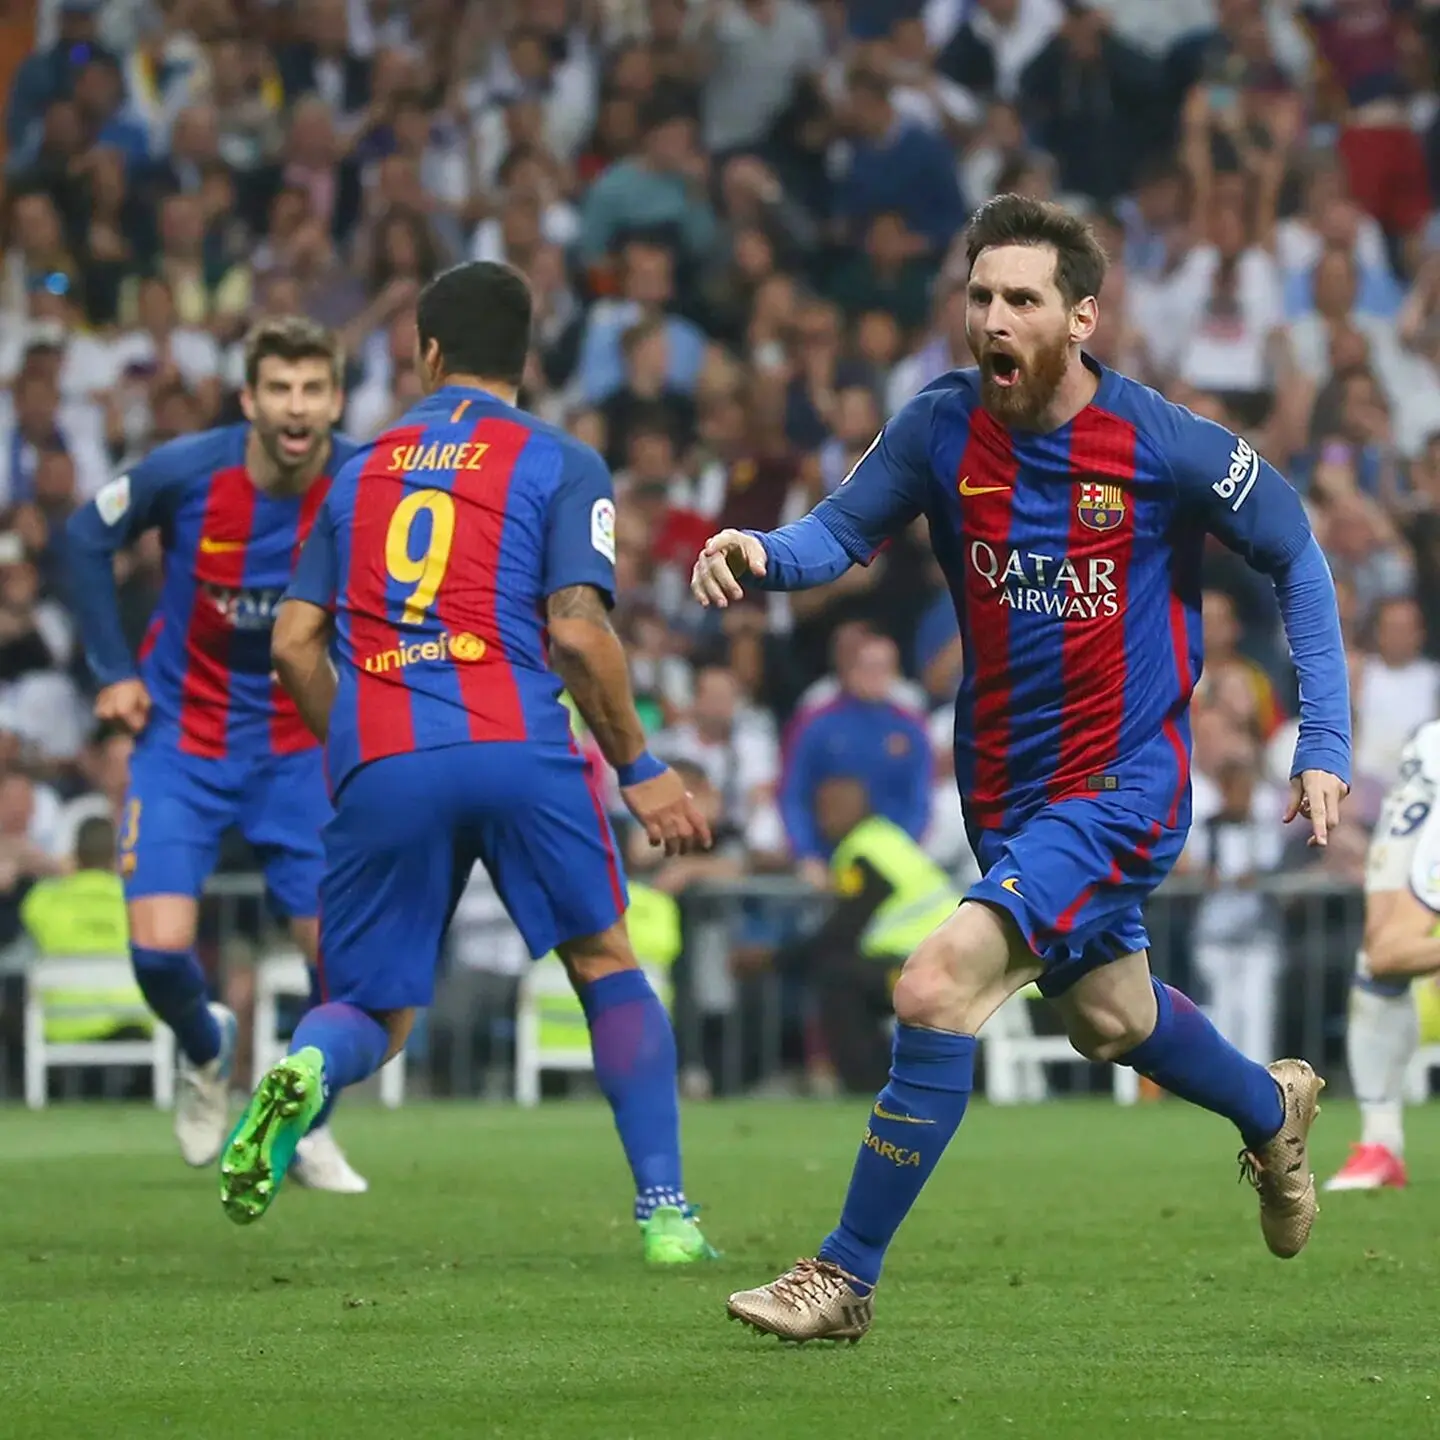 relatos de jugadas de messi - Cuál es el plato favorito de Messi